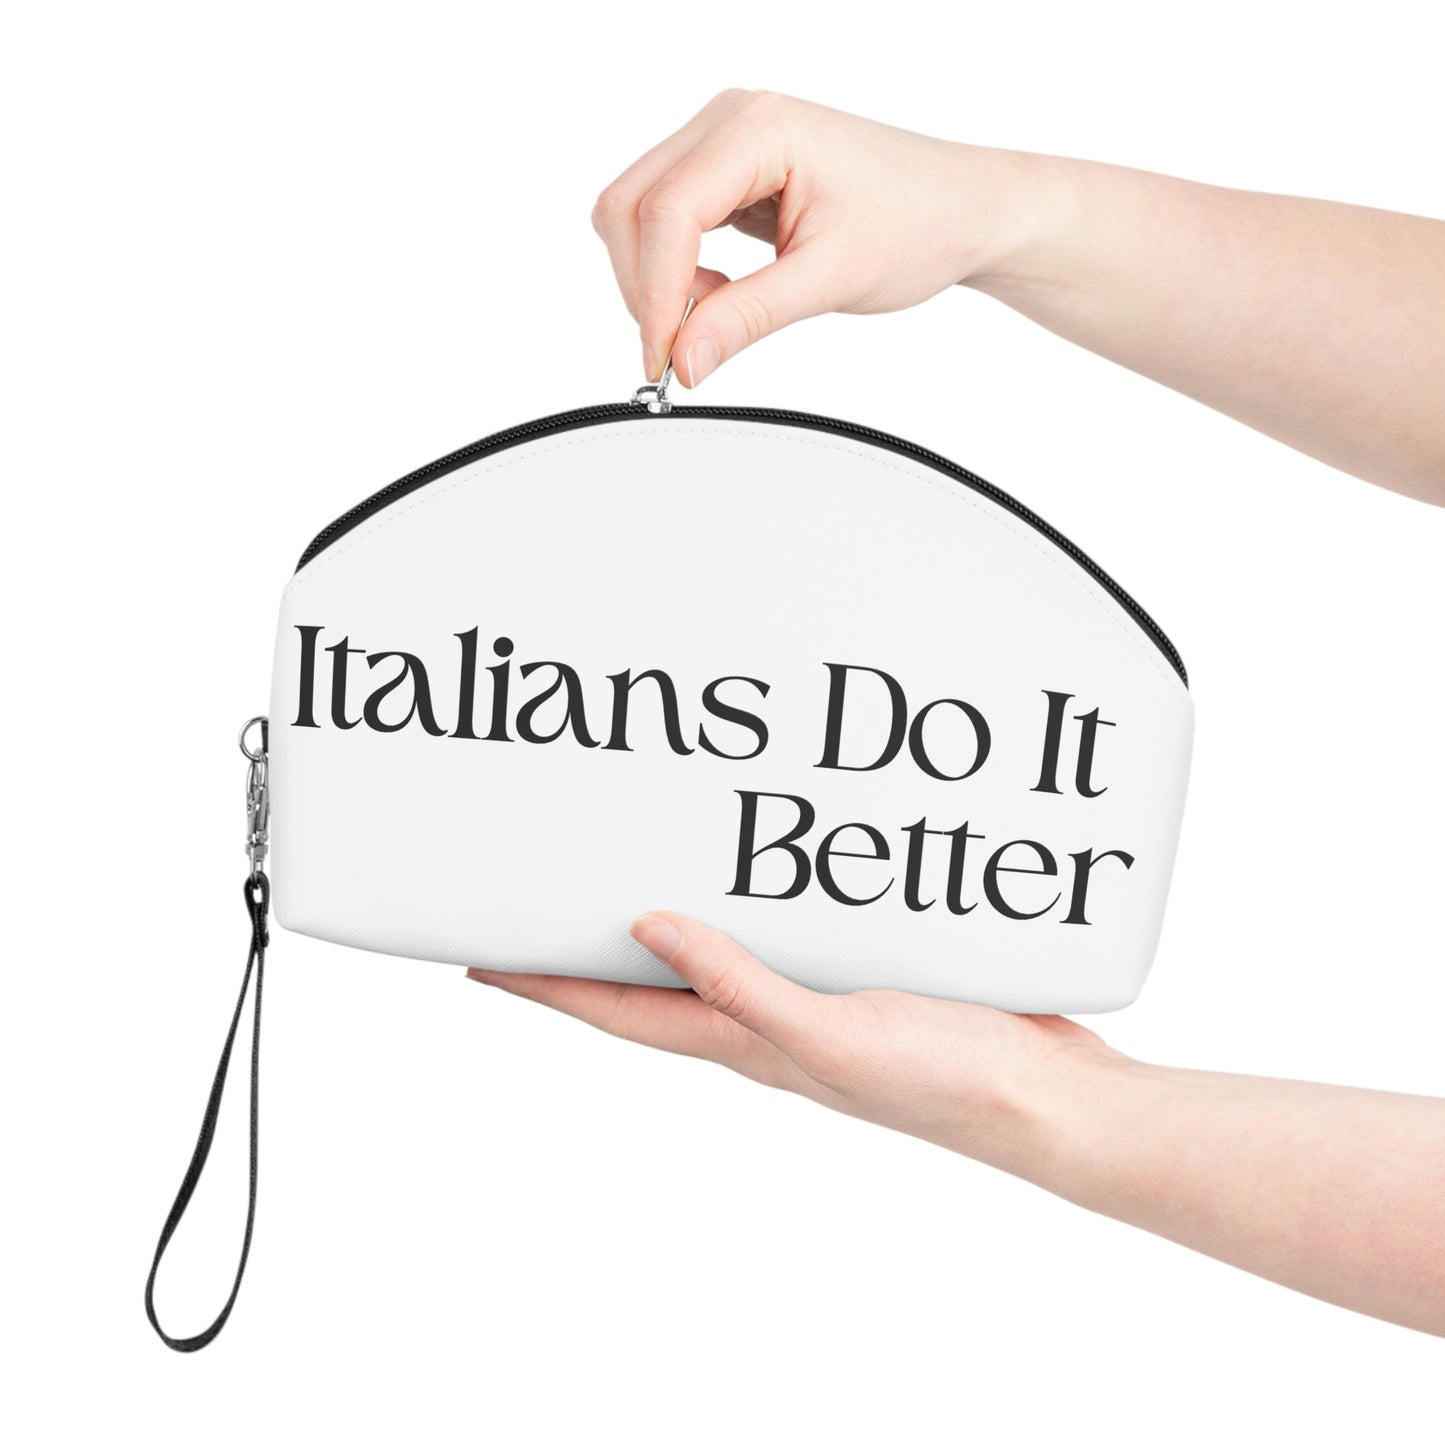 Italians Do It Better - Makeup Bag